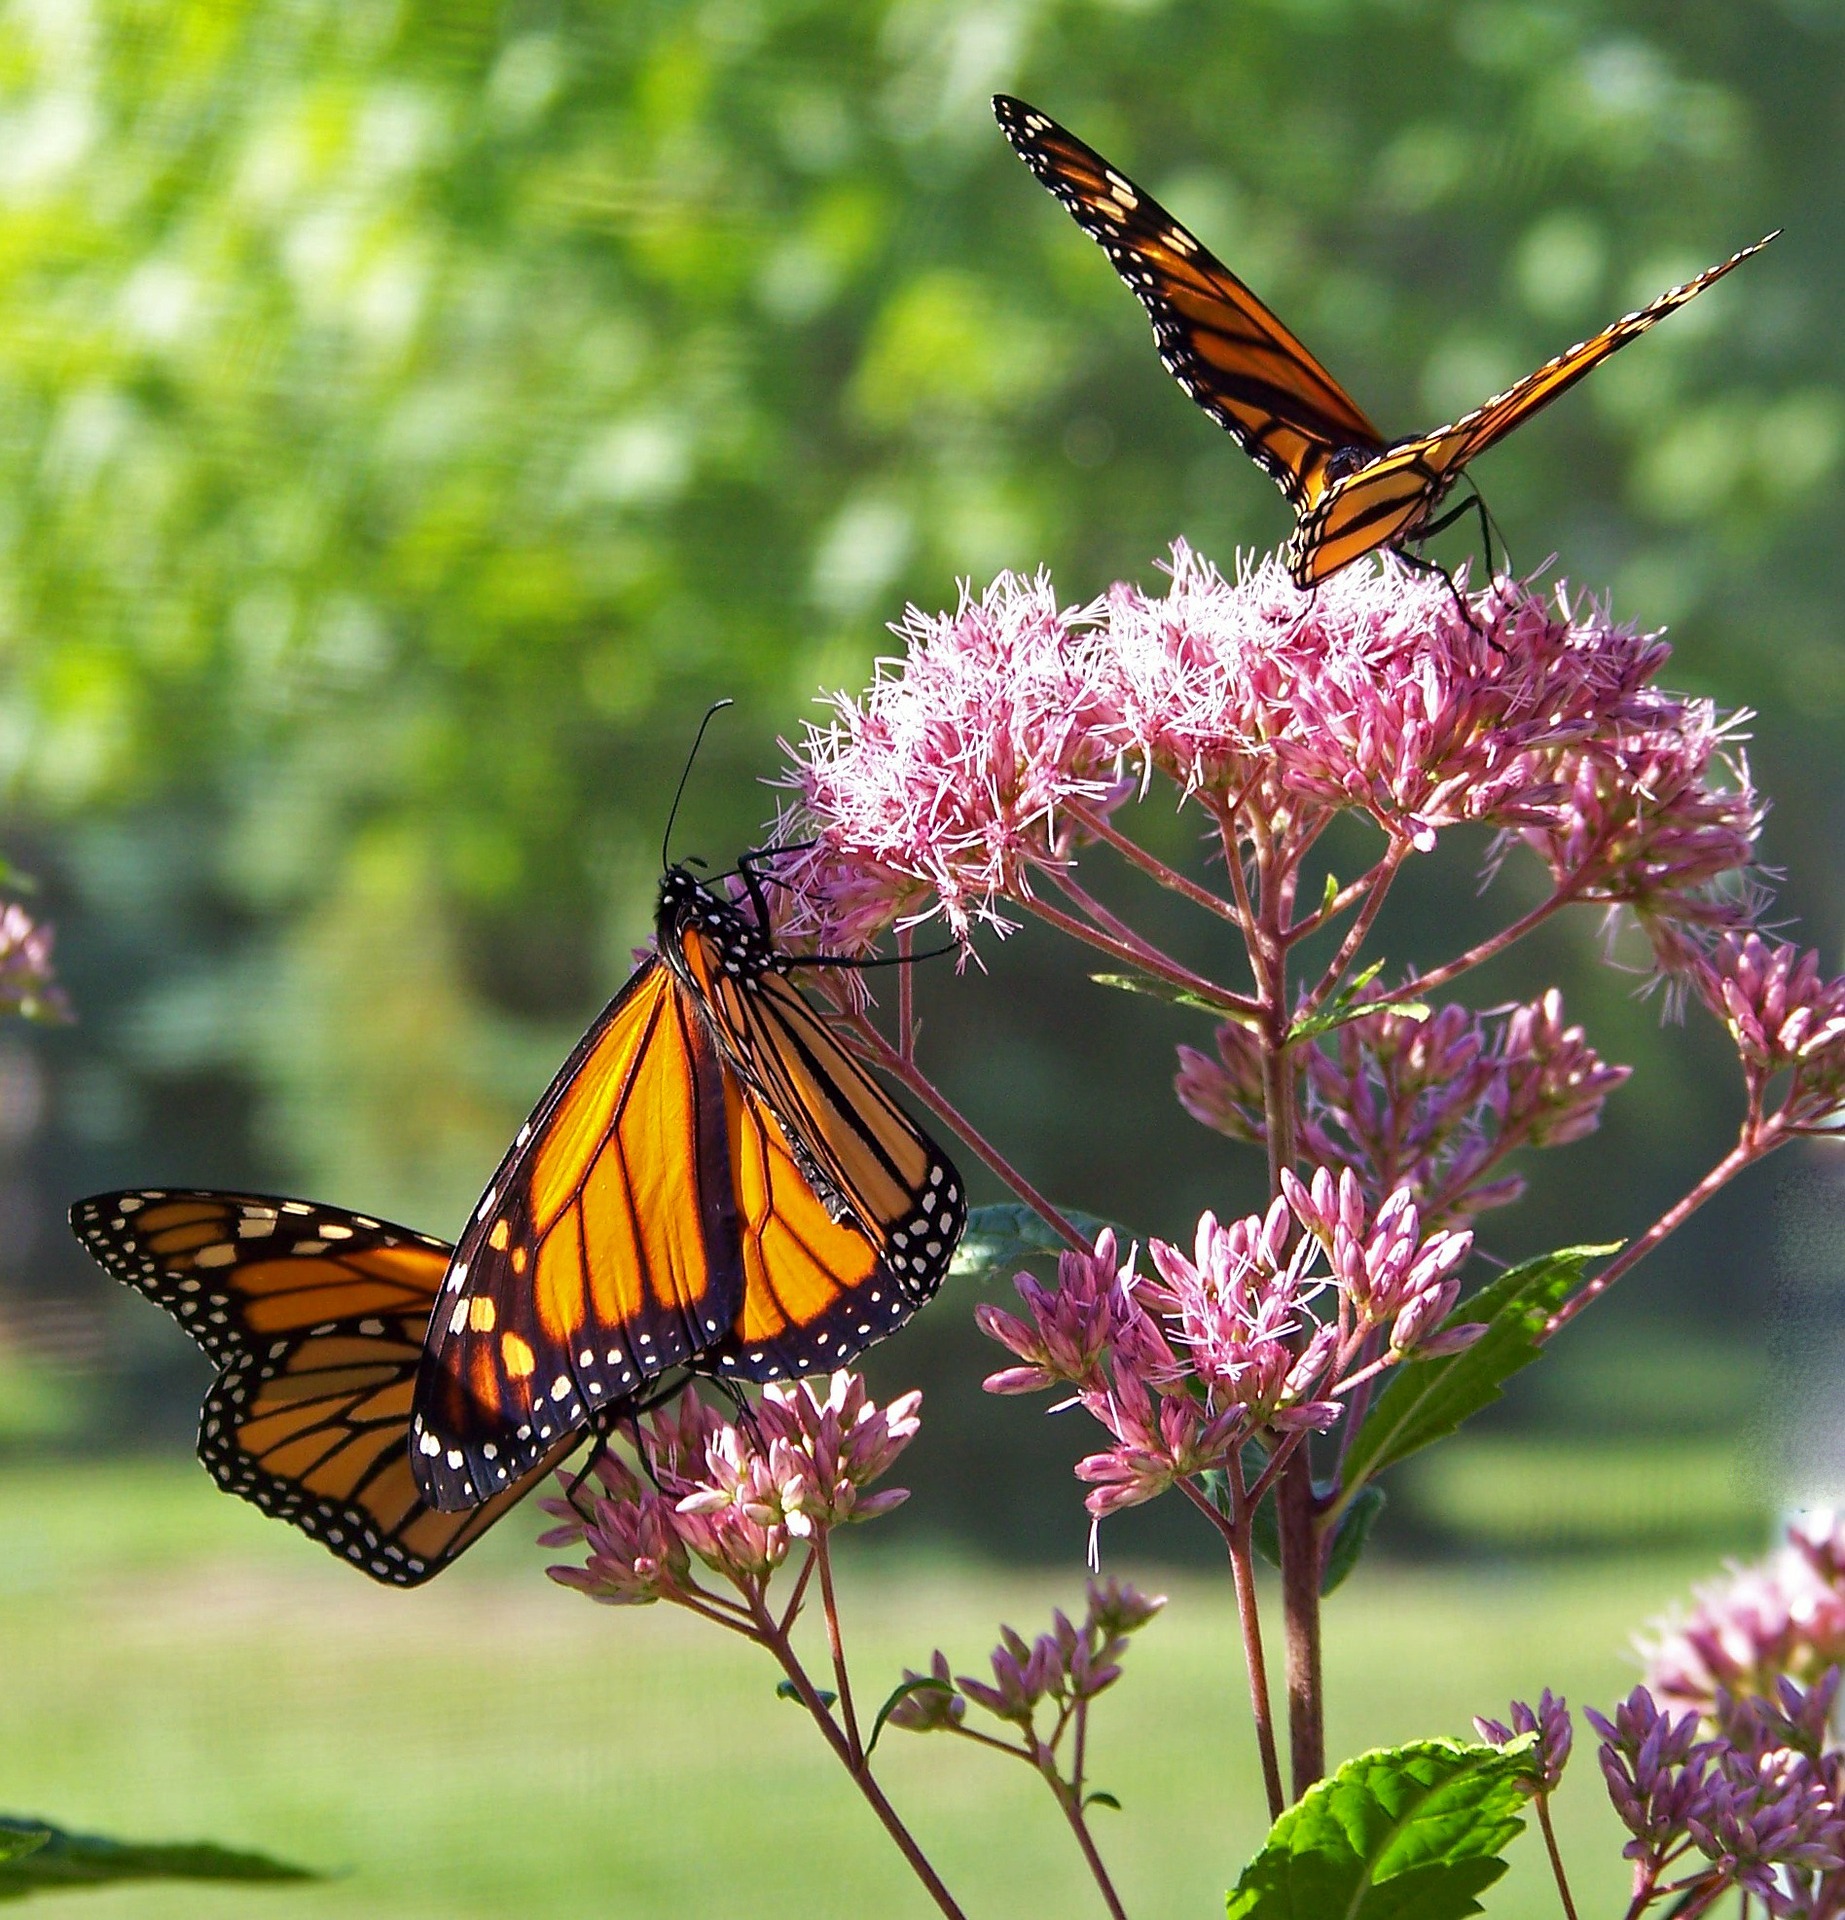 Monarch butterfly. PublicDomainPictures via Pixabay Creative Commons CC0